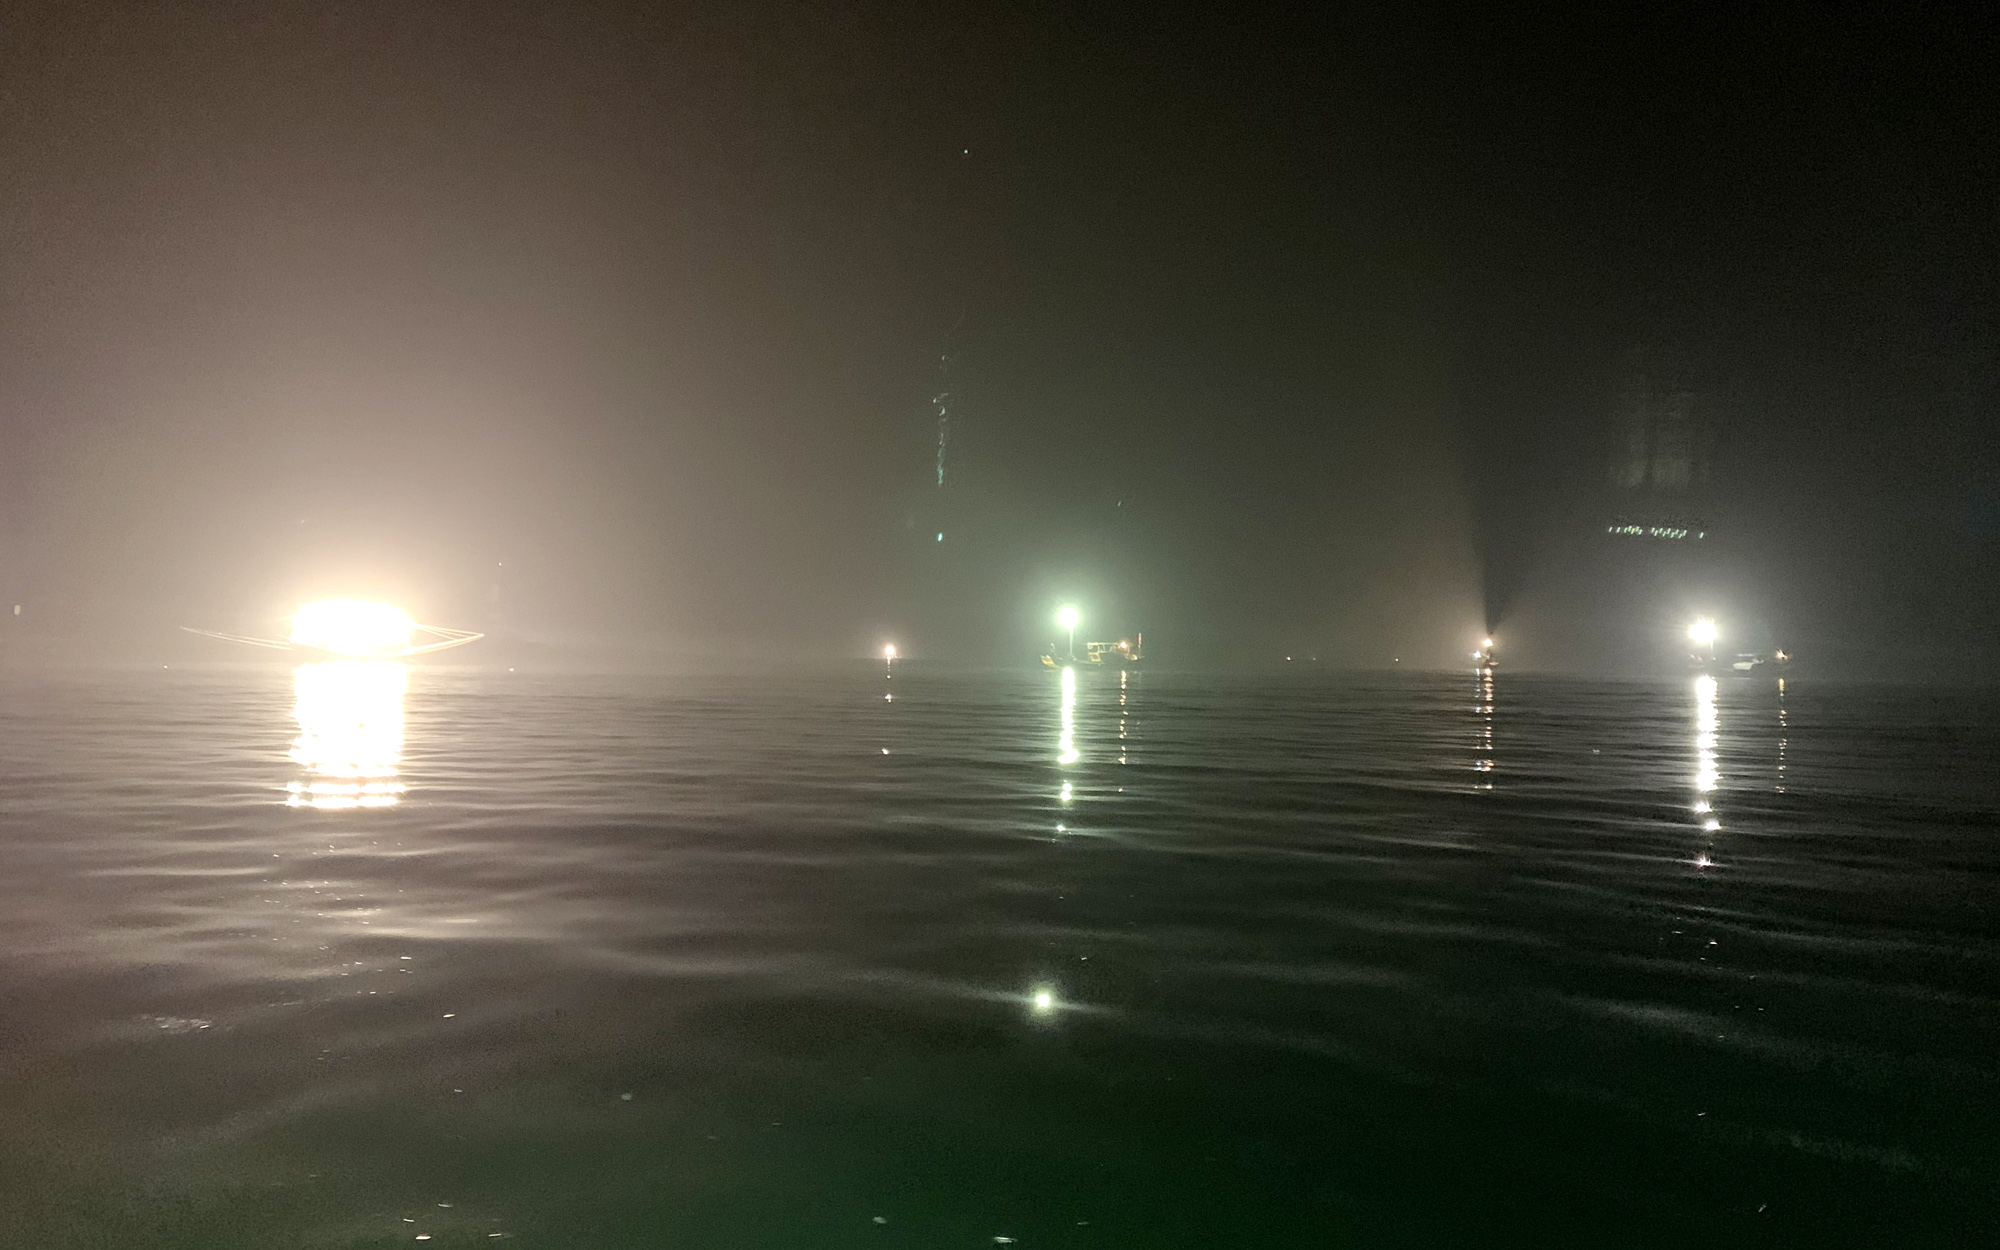 Hoạt động khai thác sứa của người dân chủ yếu vào ban đêm, các tàu thuyền được trang bị đèn chiếu sáng công suất lớn để vớt, khi sứa nổi lên mặt biển. Ảnh: Mạnh Trường